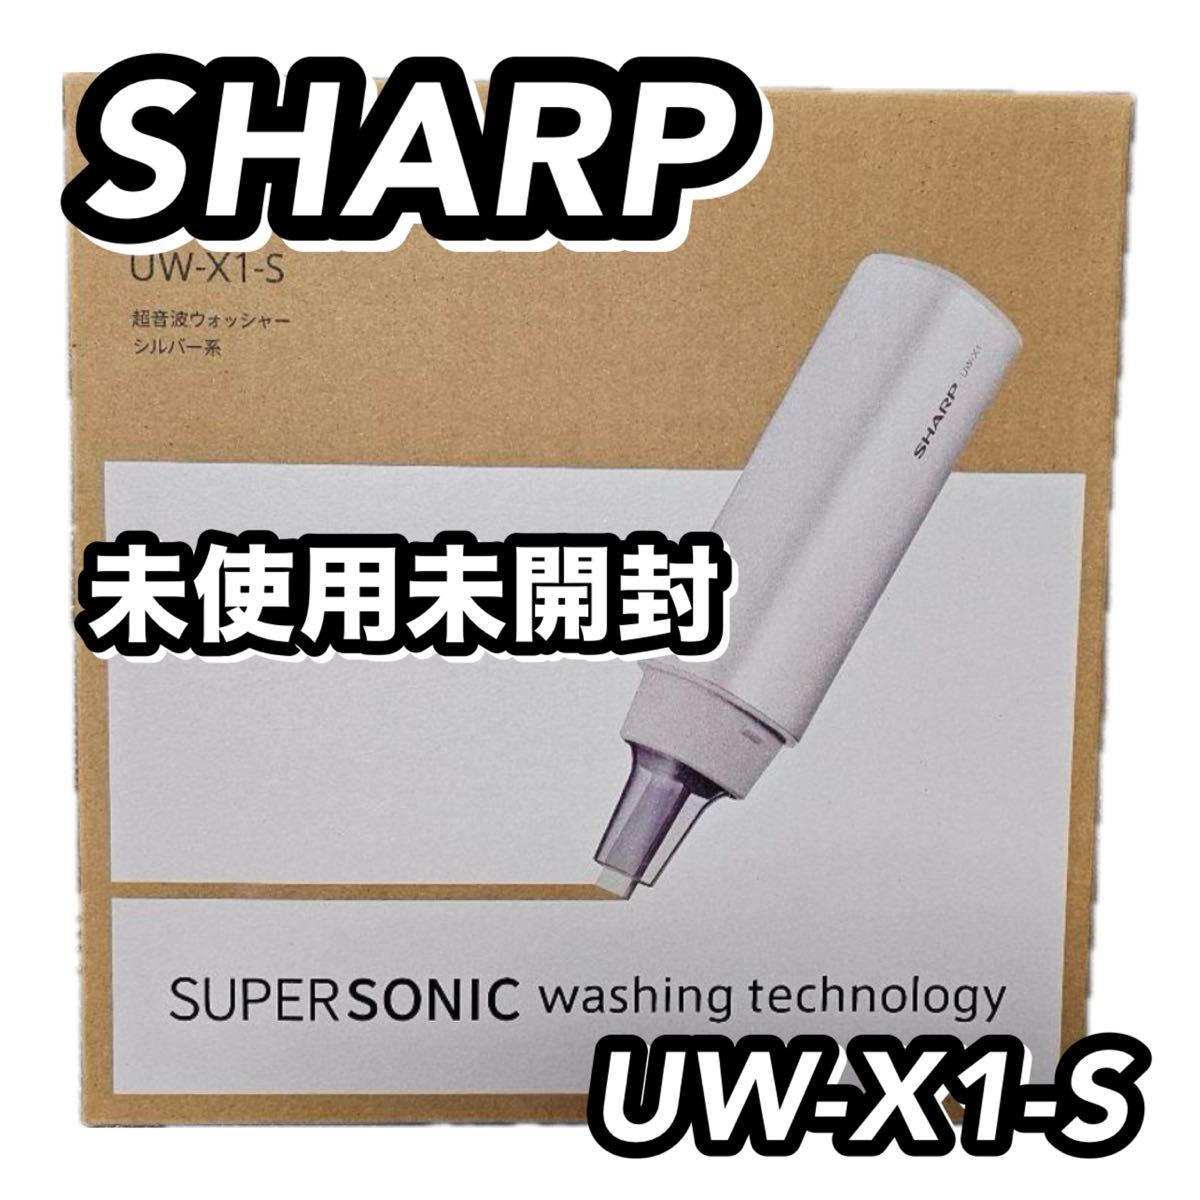 未使用未開封 最新モデル SHARP シャープ UW-X1 超音波ウォッシャー 超音波シミ抜き 汚れ落とし 洋服 軽量_画像1